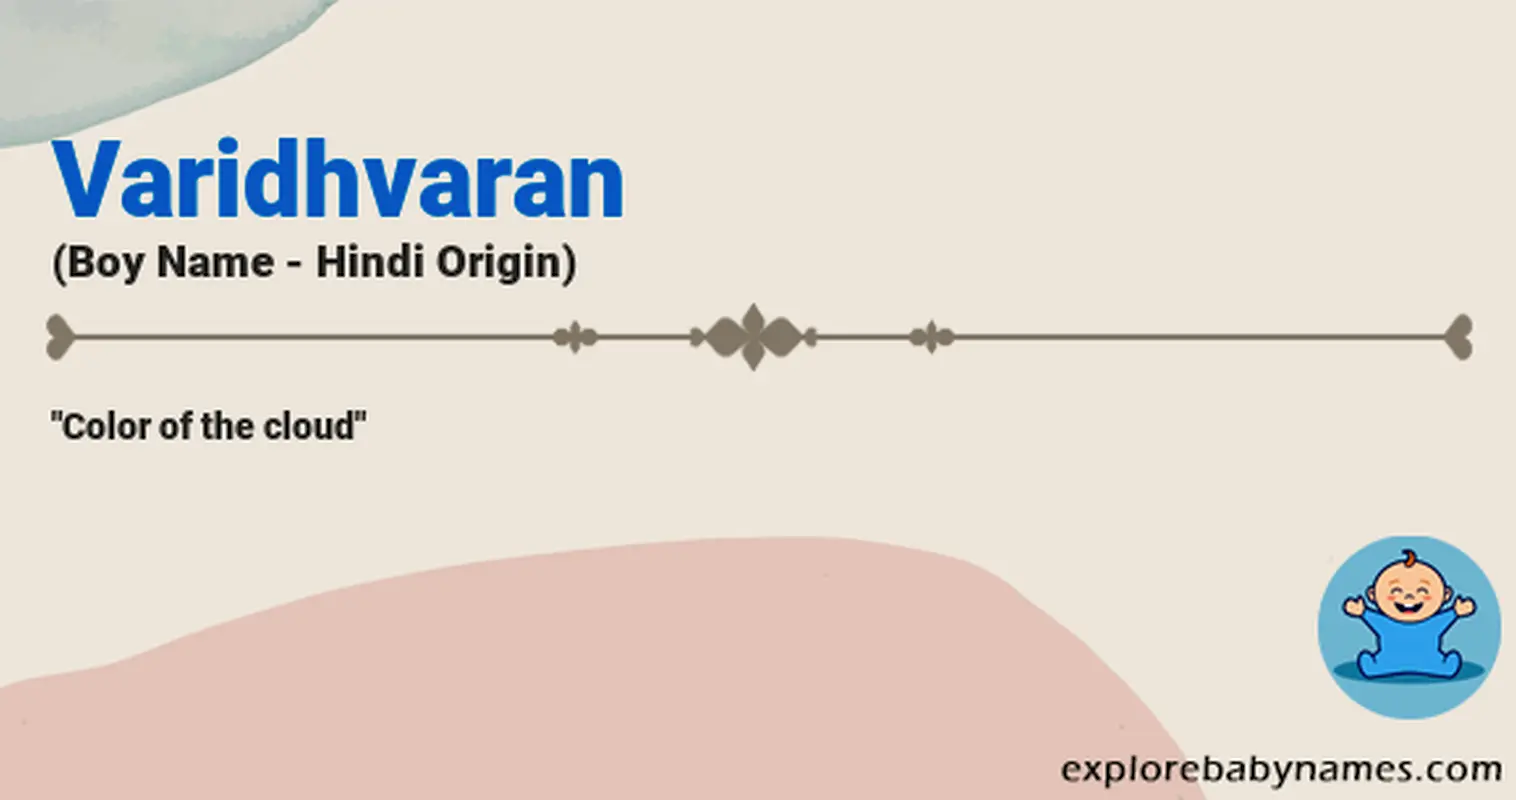 Meaning of Varidhvaran